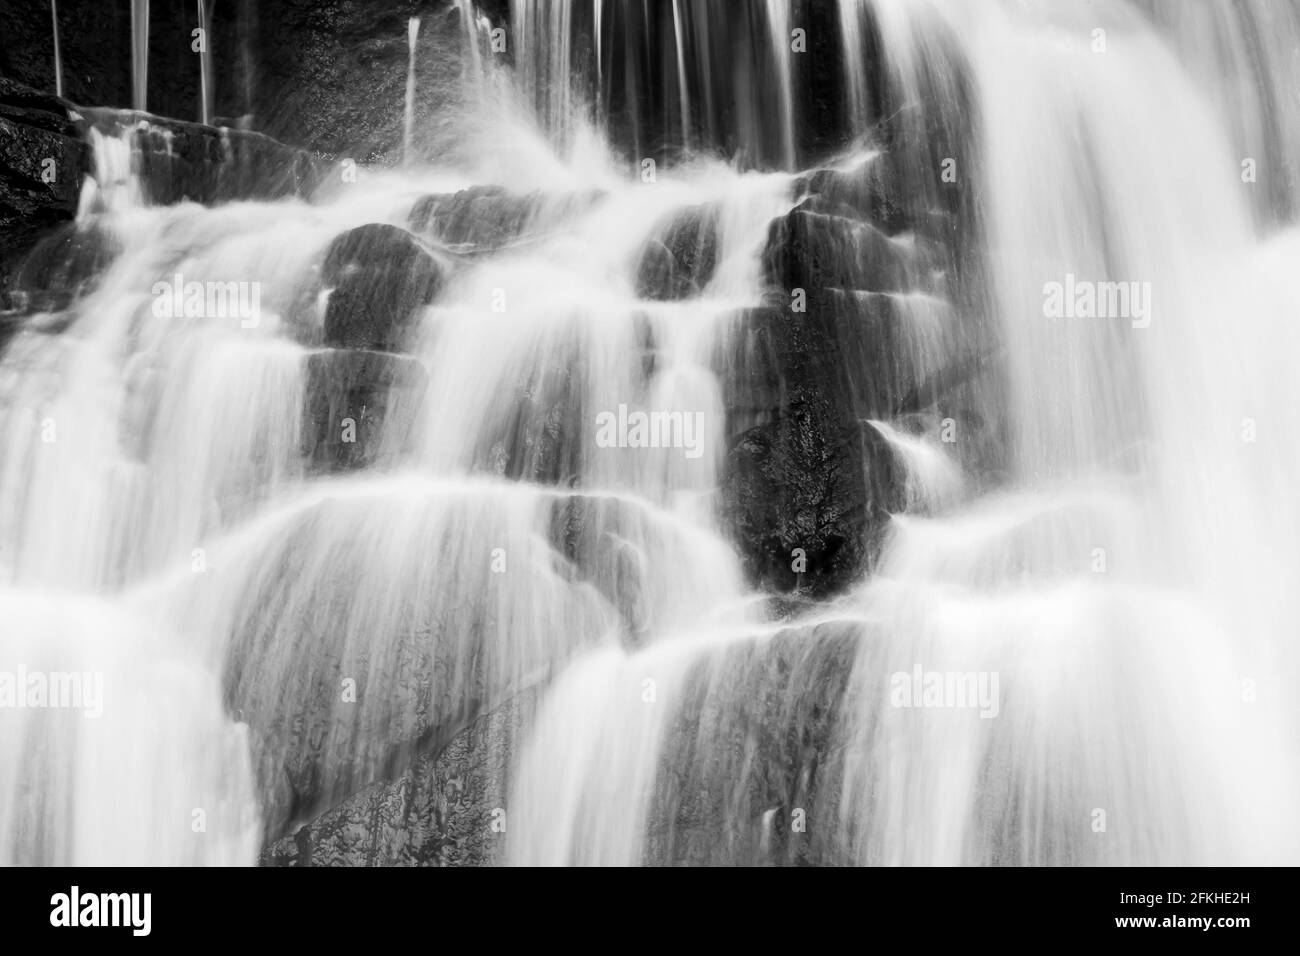 Reiner Wasserfall in einem tropischen Wald, helles und sanft fallendes Wasser aus Abfällen, abstrakte Schichten und Wasserfalloberfläche. Monochrom. Stockfoto